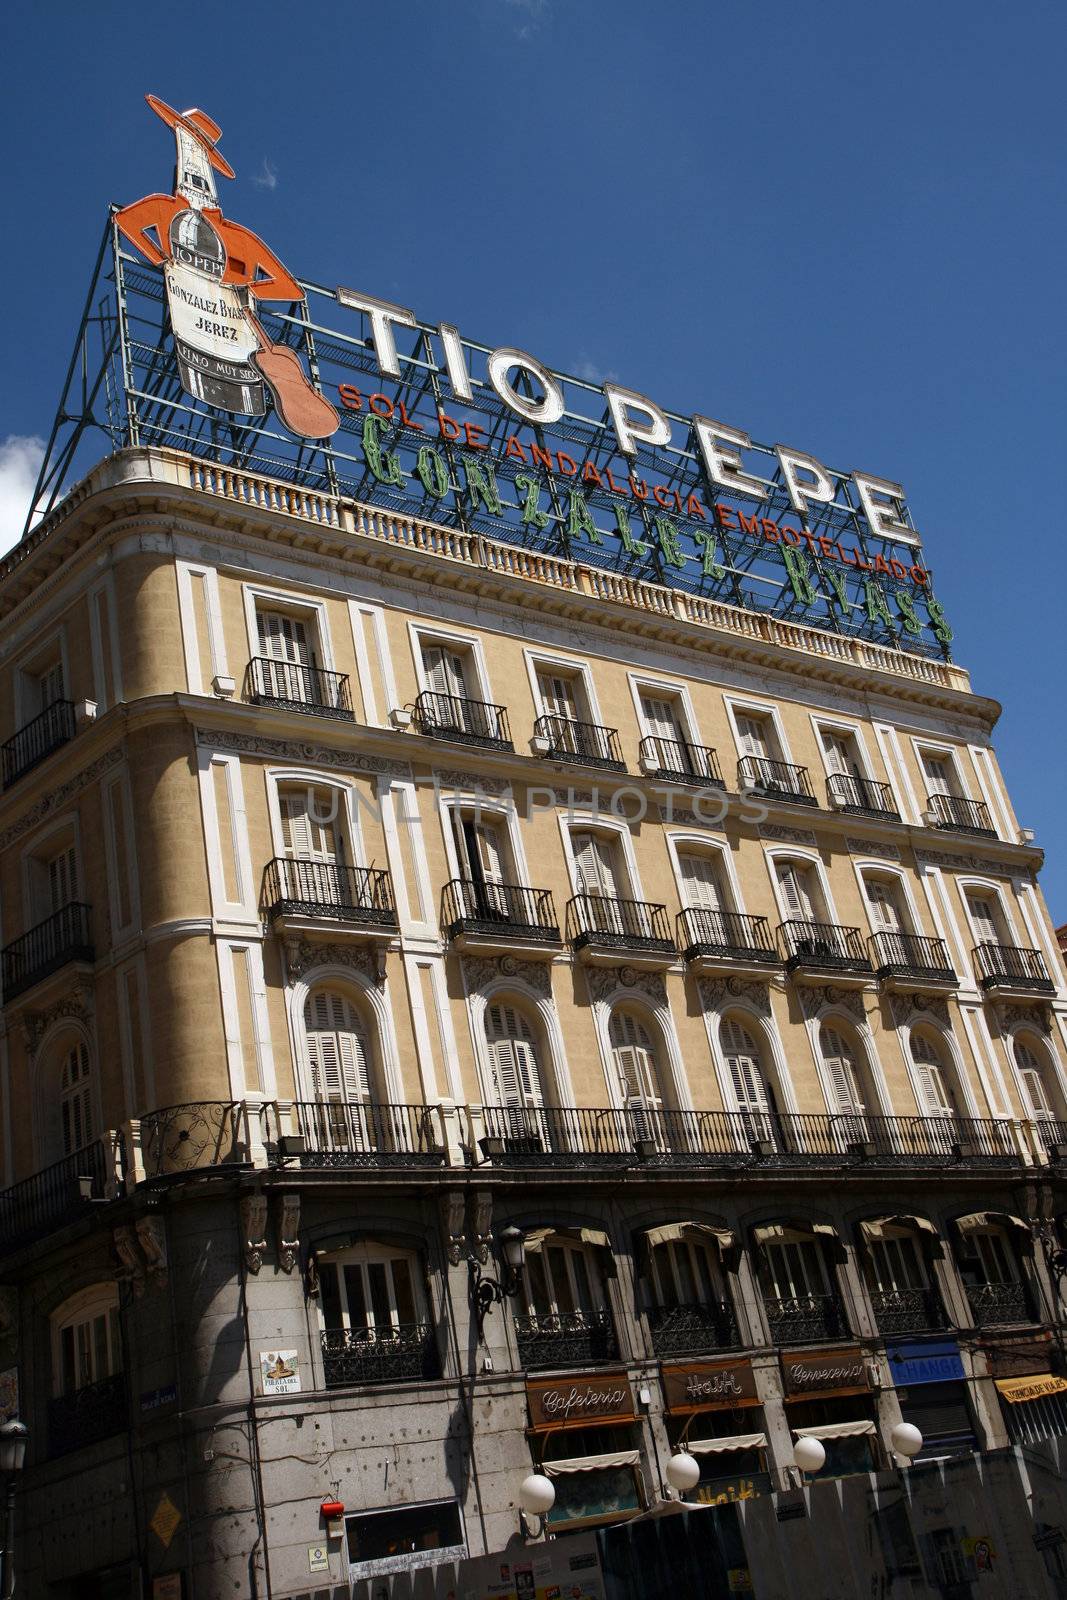 Iconic Tio Pepe sign, Puerta del Sol, Madrid, Spain by mrfocus